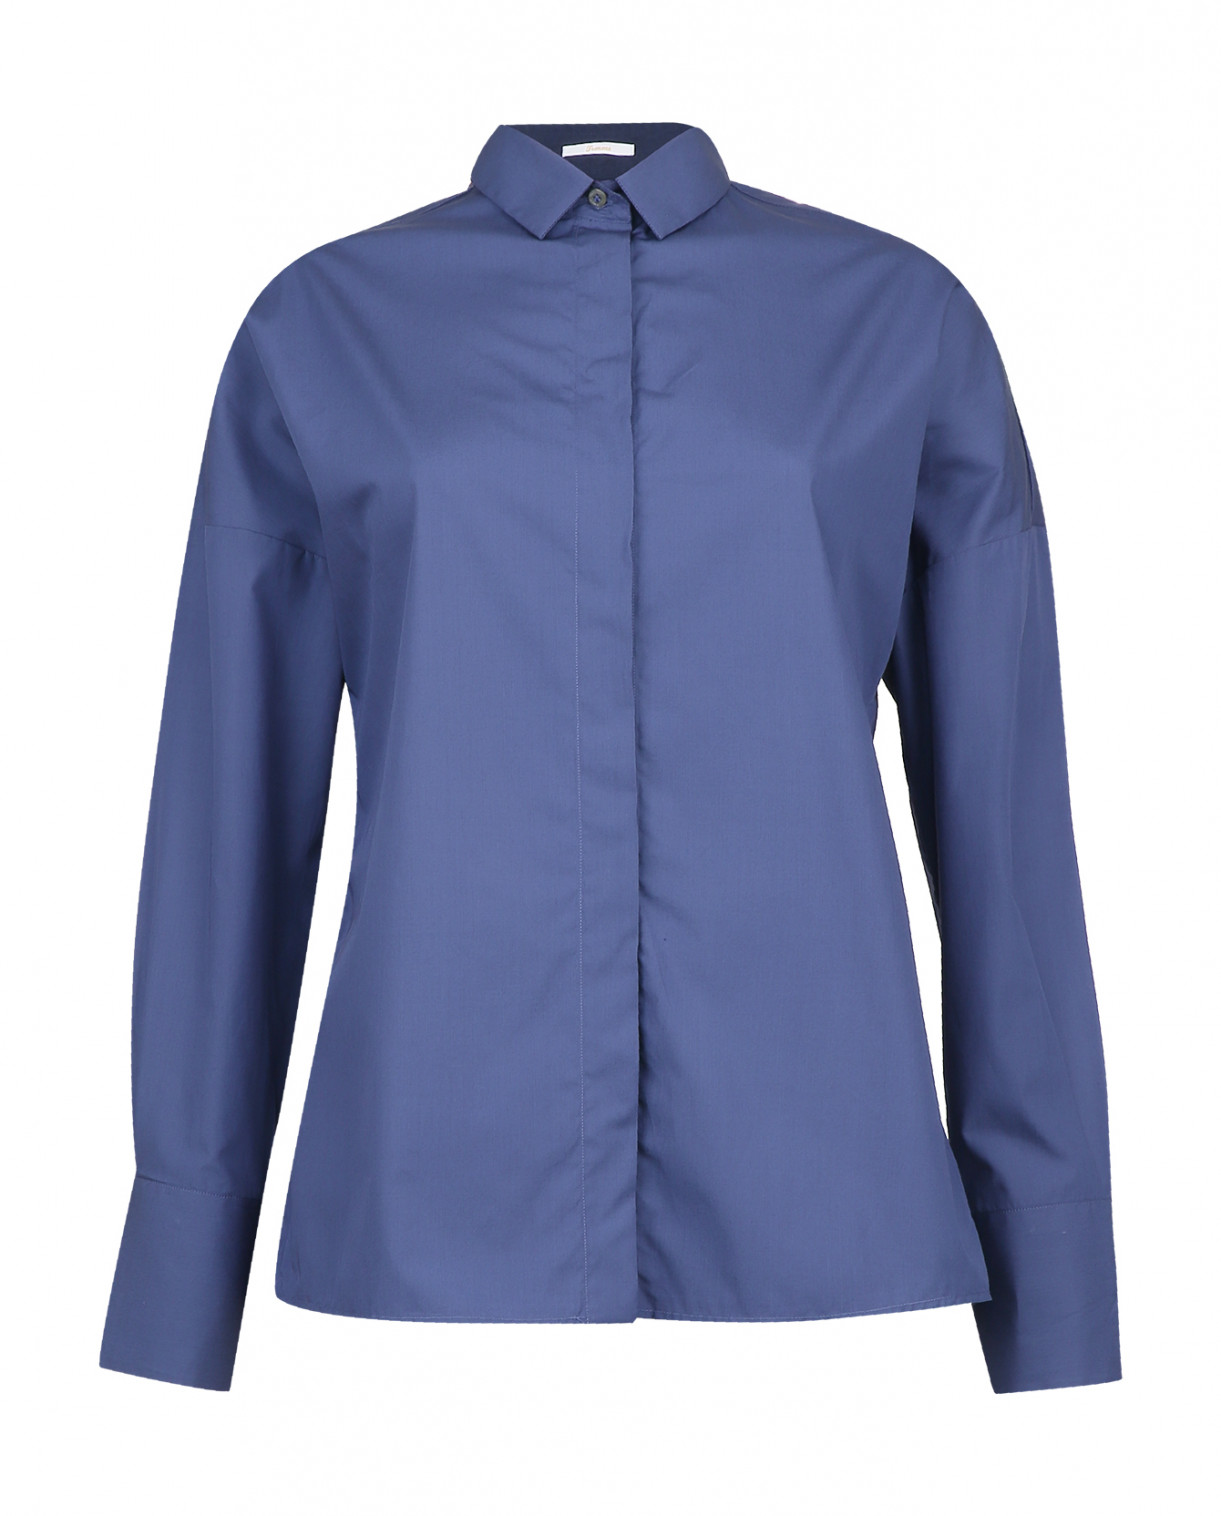 Классическая рубашка из хлопка с рукавами летучая мышь Robert Friedman  –  Общий вид  – Цвет:  Синий